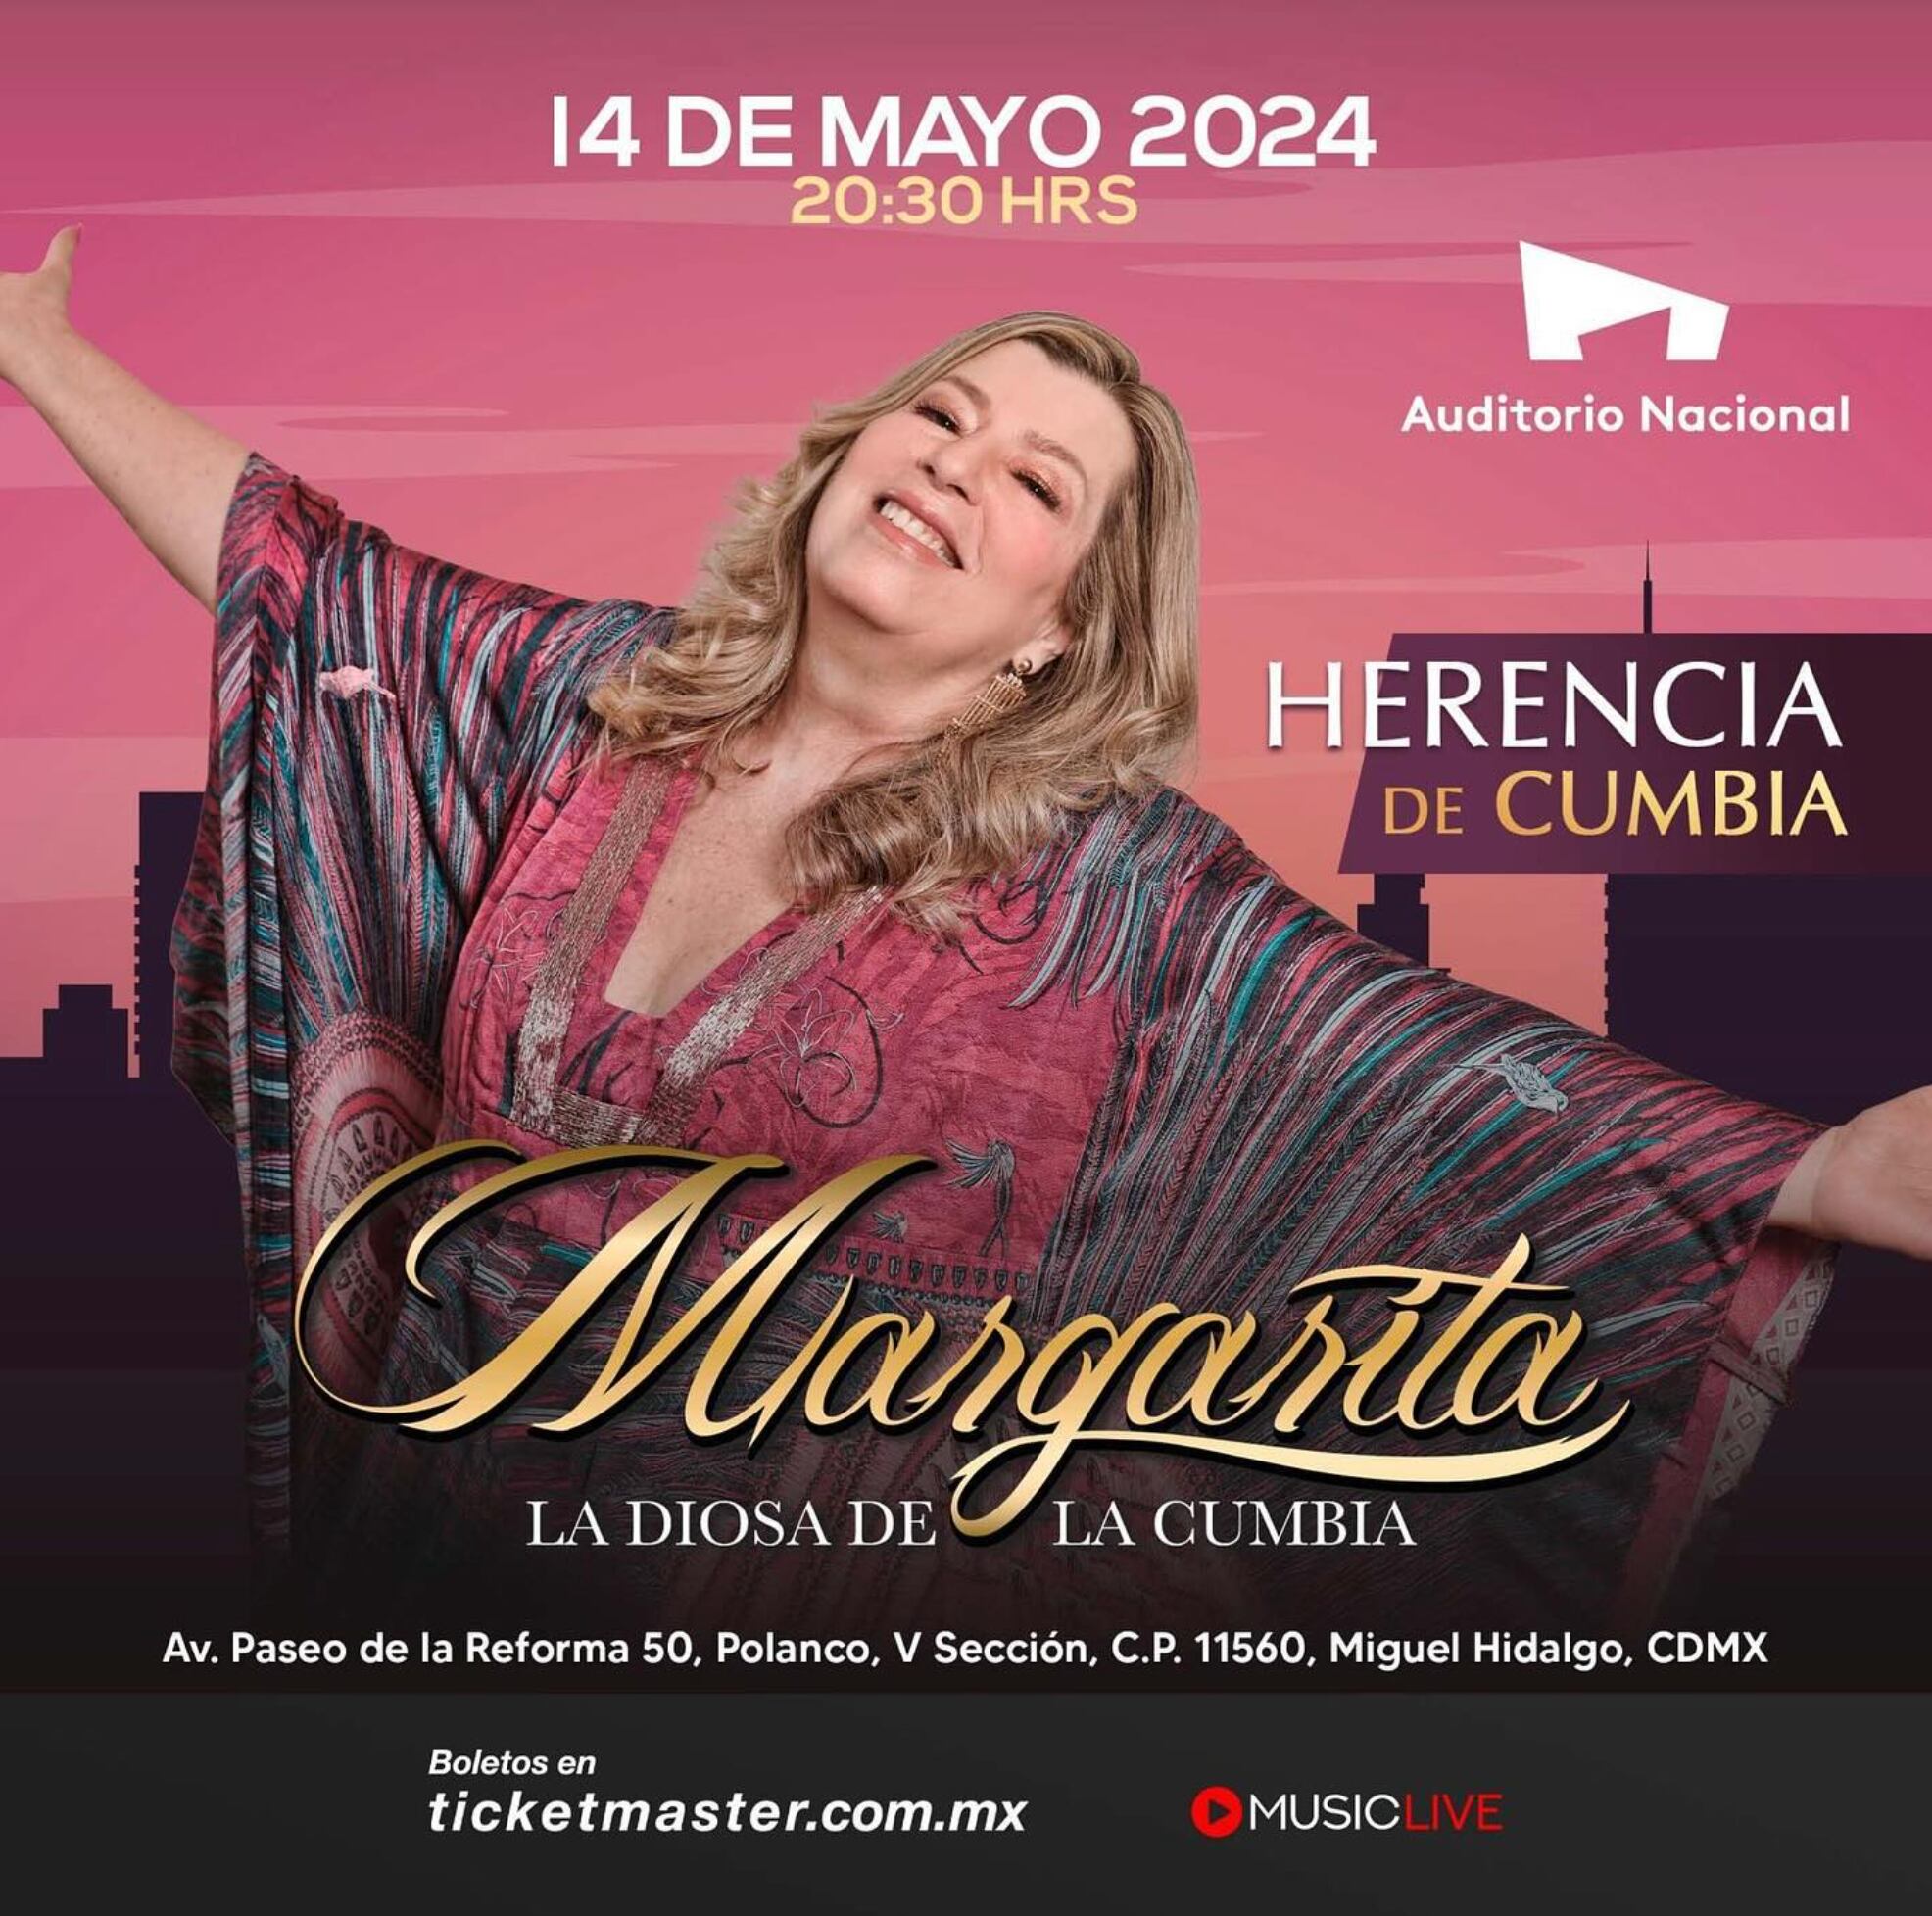 Margarita la Diosa de la Cumbia se presentará el 14 de mayo en el Auditorio Nacional